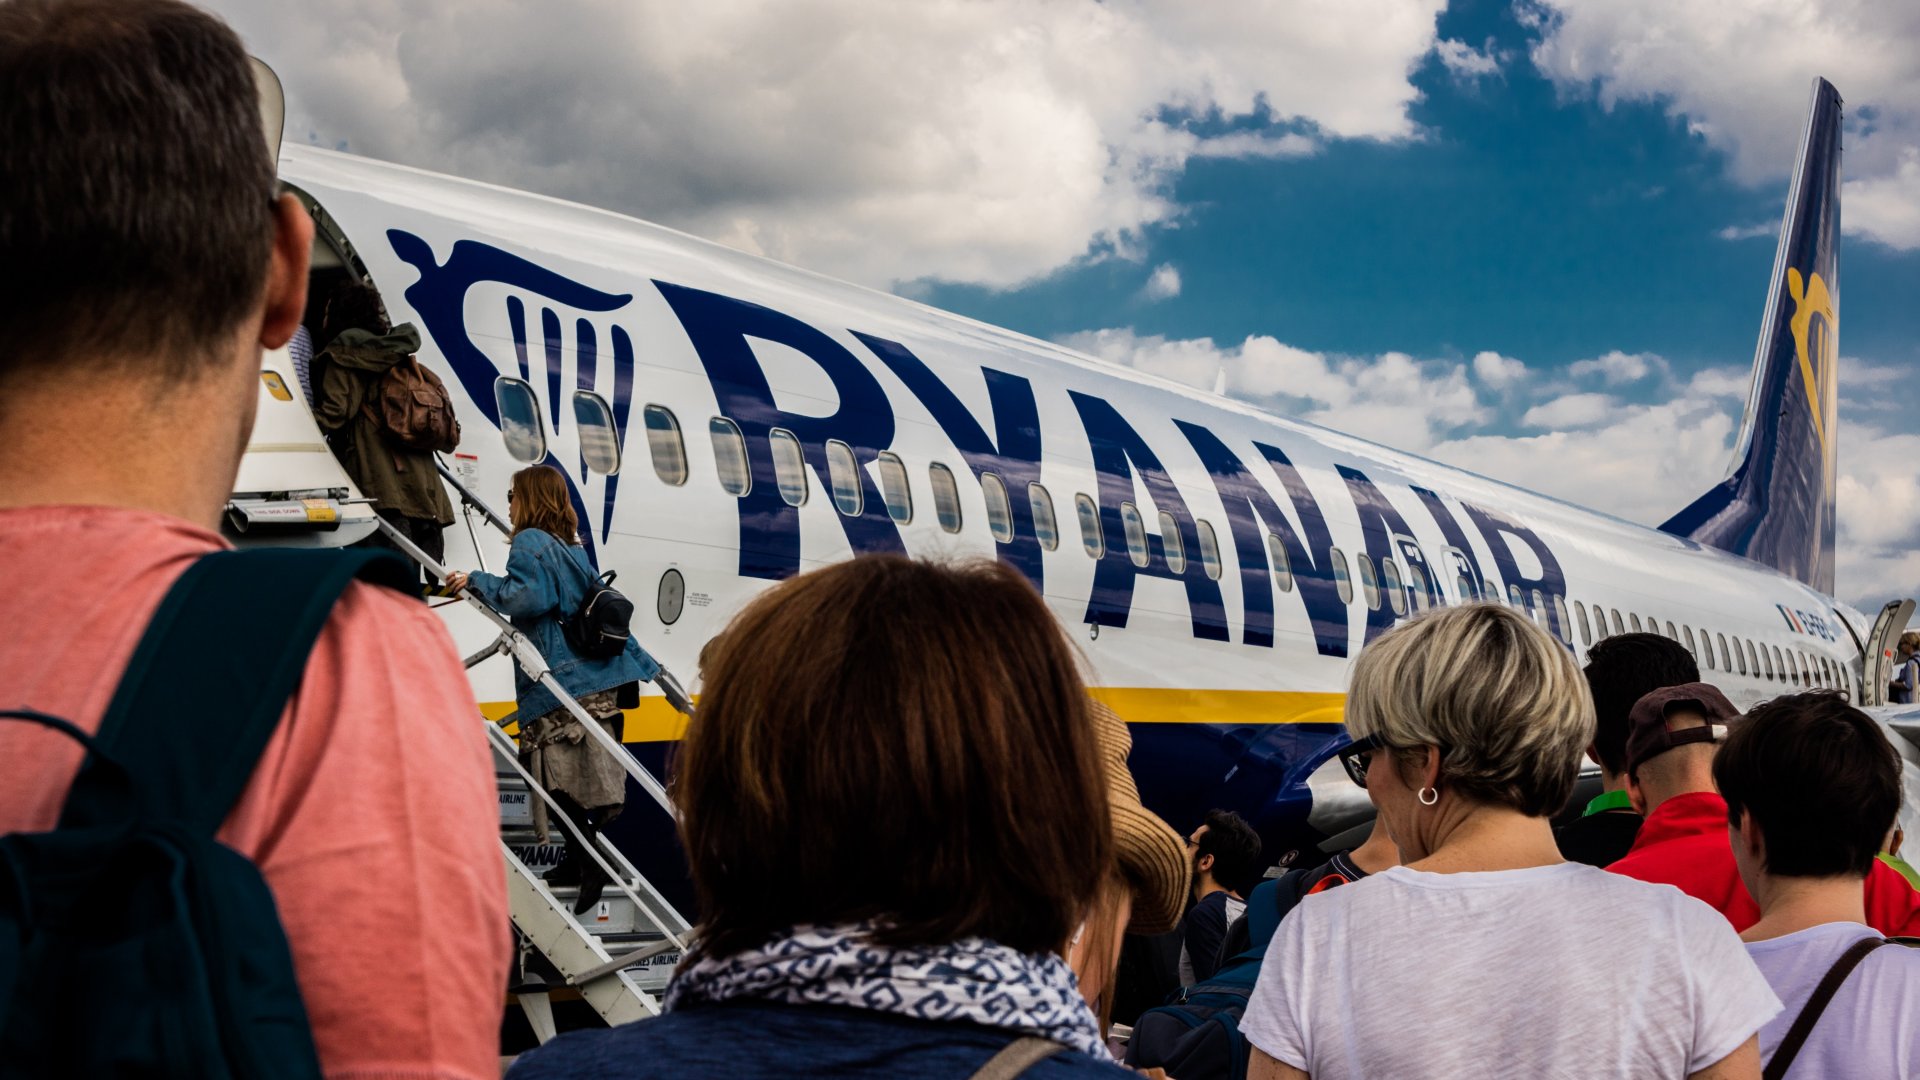 Utasok szállnak fel a Ryanair repülőgépére